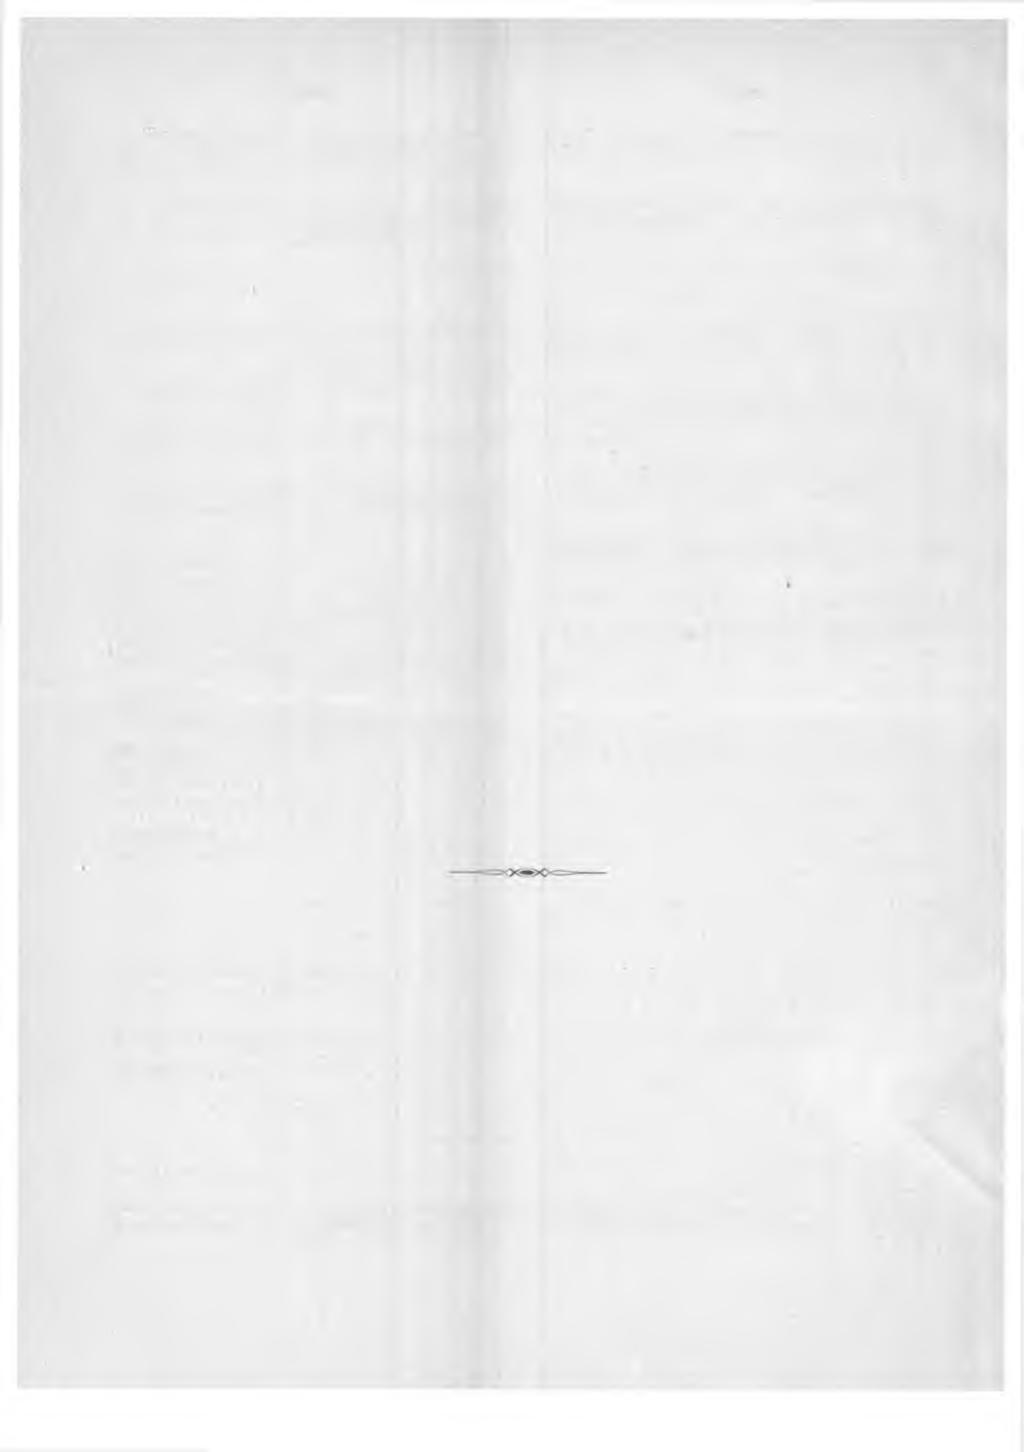 6 REV VAG ankomna öfverloppsexemplar af enligt gamla systemet prenumererade tidningar återsändas med första post åtföljda af derför afsedd blankett, bili. 5 s. 40 (10).